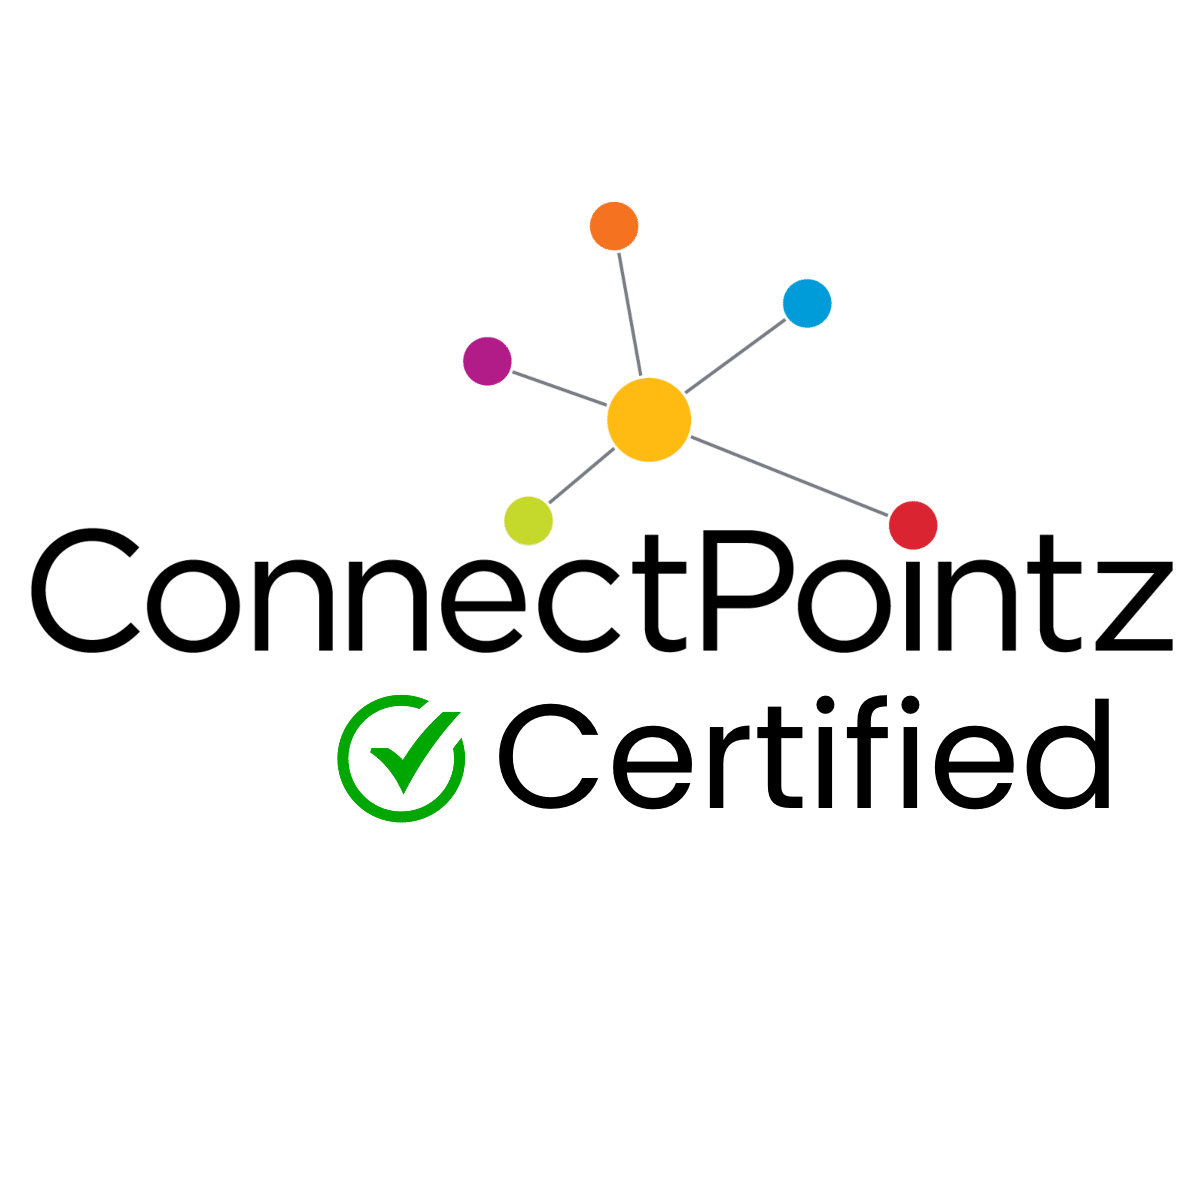 connectpointz certified logo